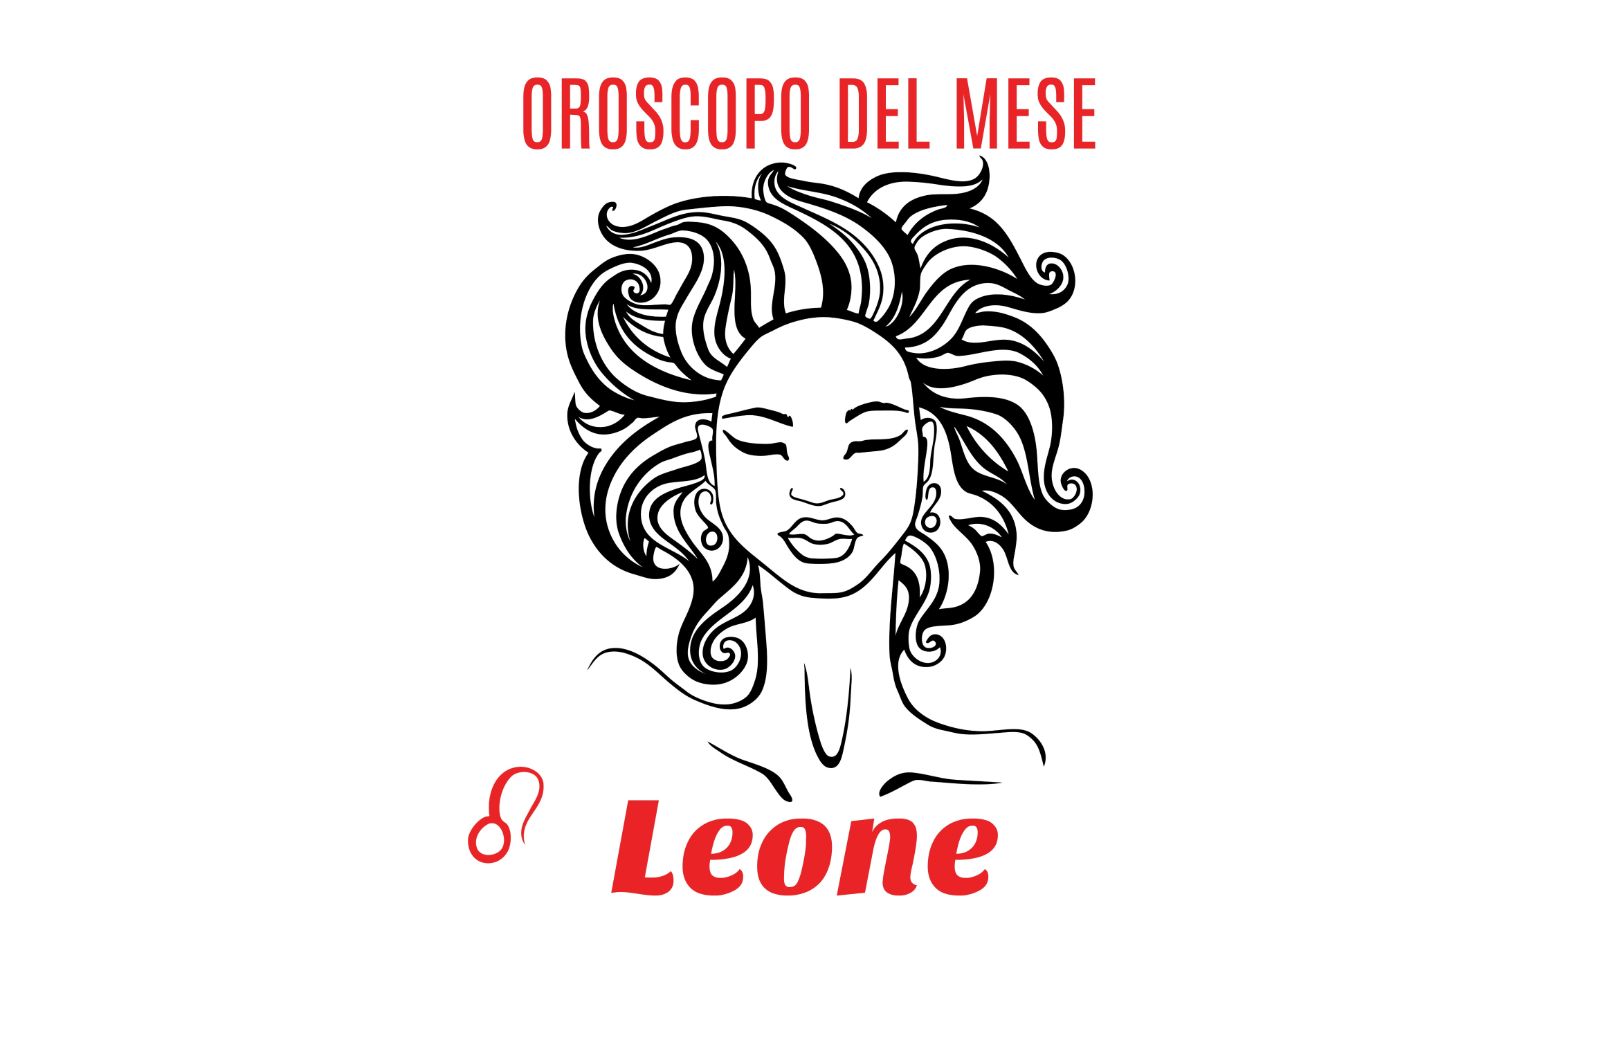 Oroscopo del mese: Leone - marzo 2018